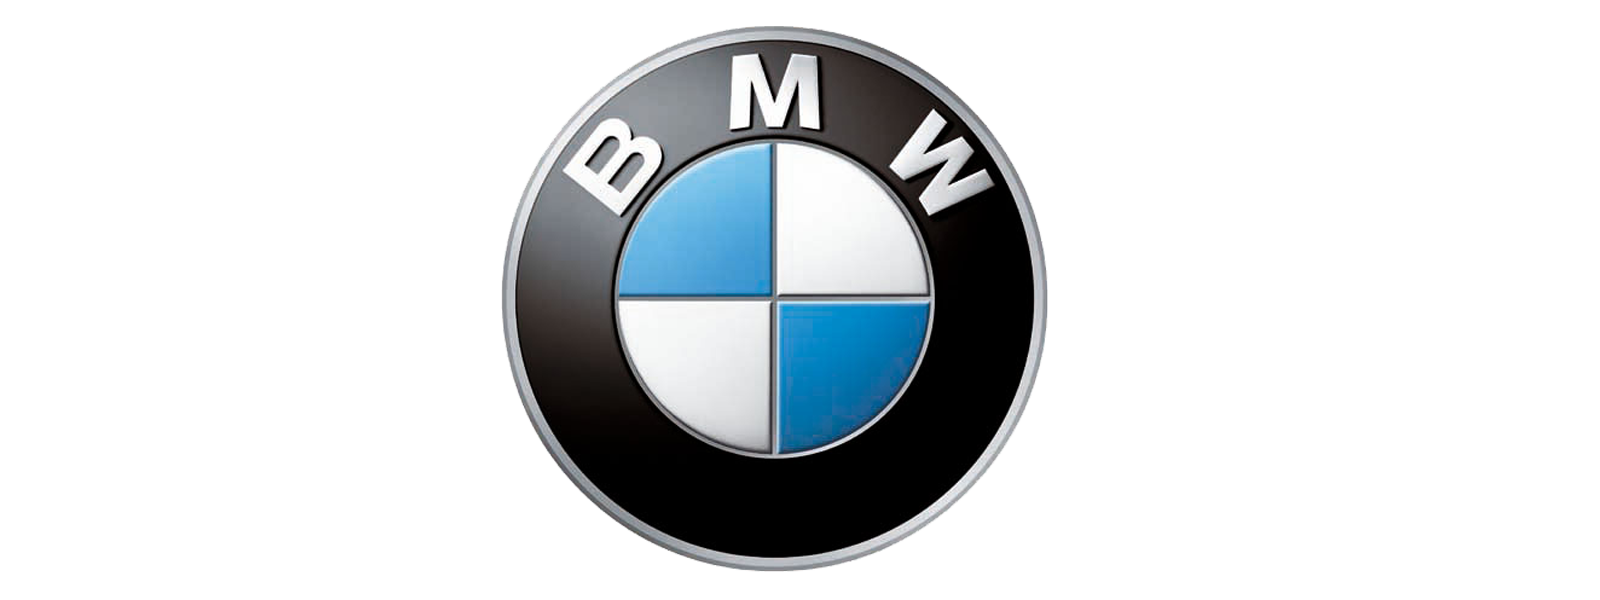 kisspng-bmw-2-series-car-bmw-m3-logo-bmw-5ac93511ba3895.4158289215231357617628